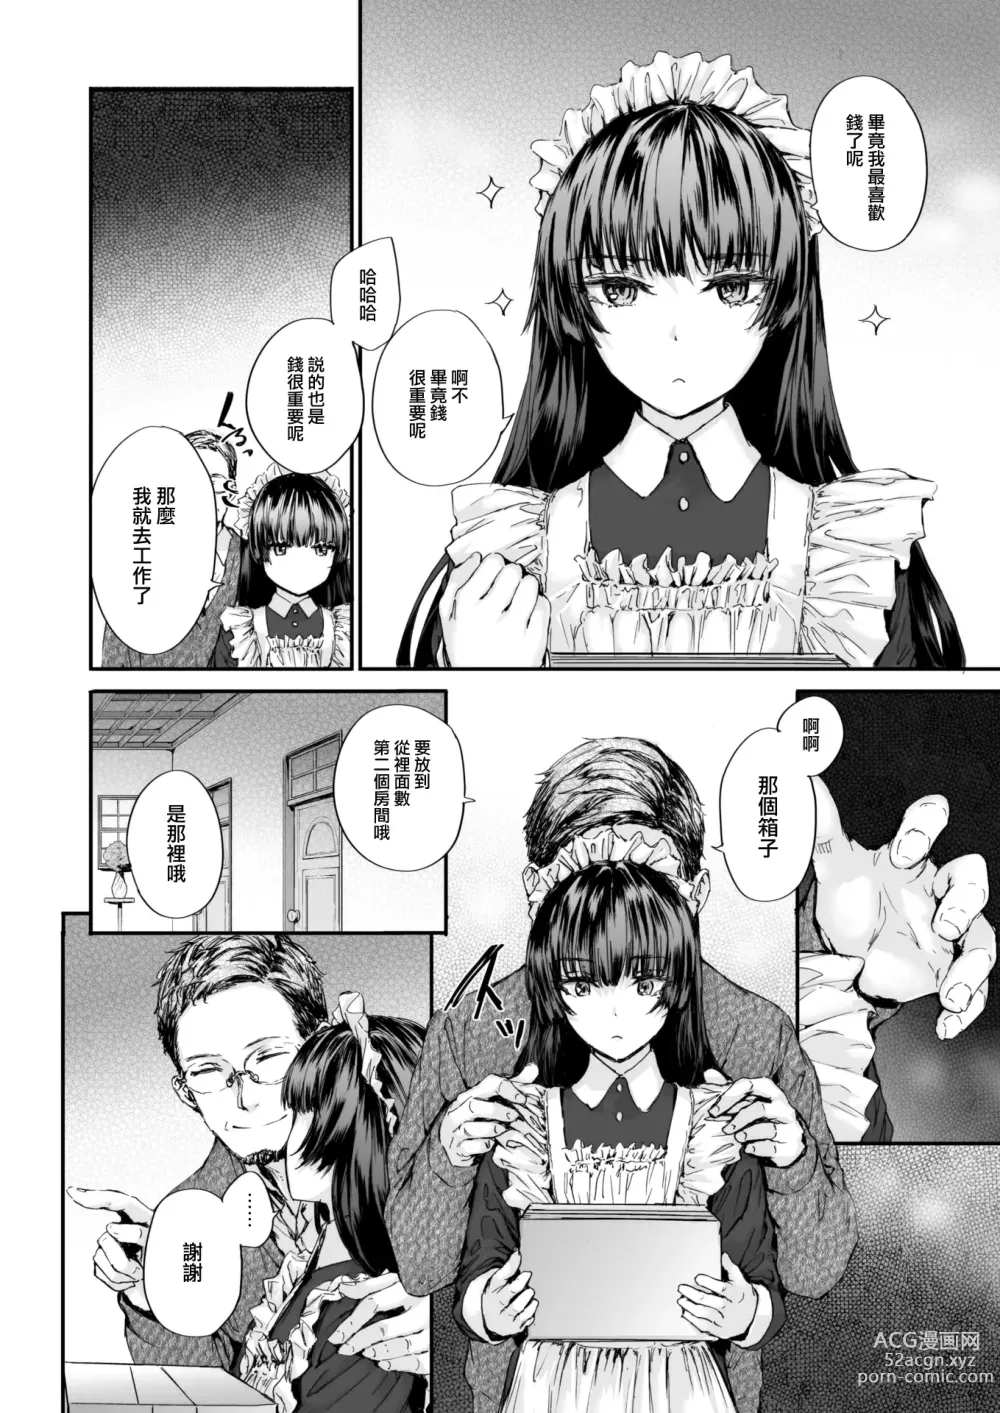 Page 5 of manga Haken Maid no Tomotakasan